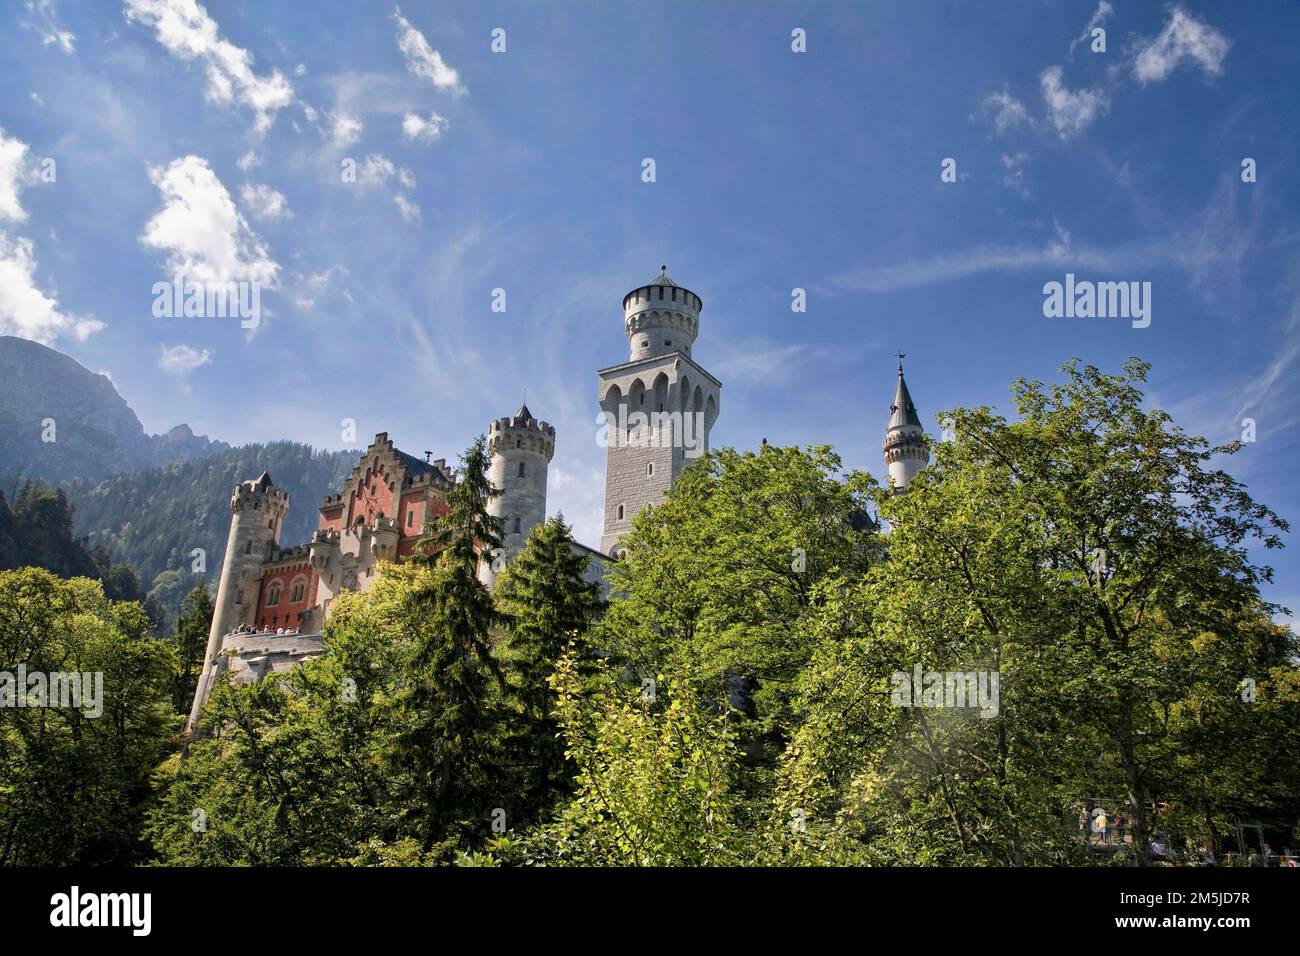 Il castello di Neuschwanstein sorge fuori dalla foresta ai piedi delle Alpi nella Germania meridionale. Foto Stock